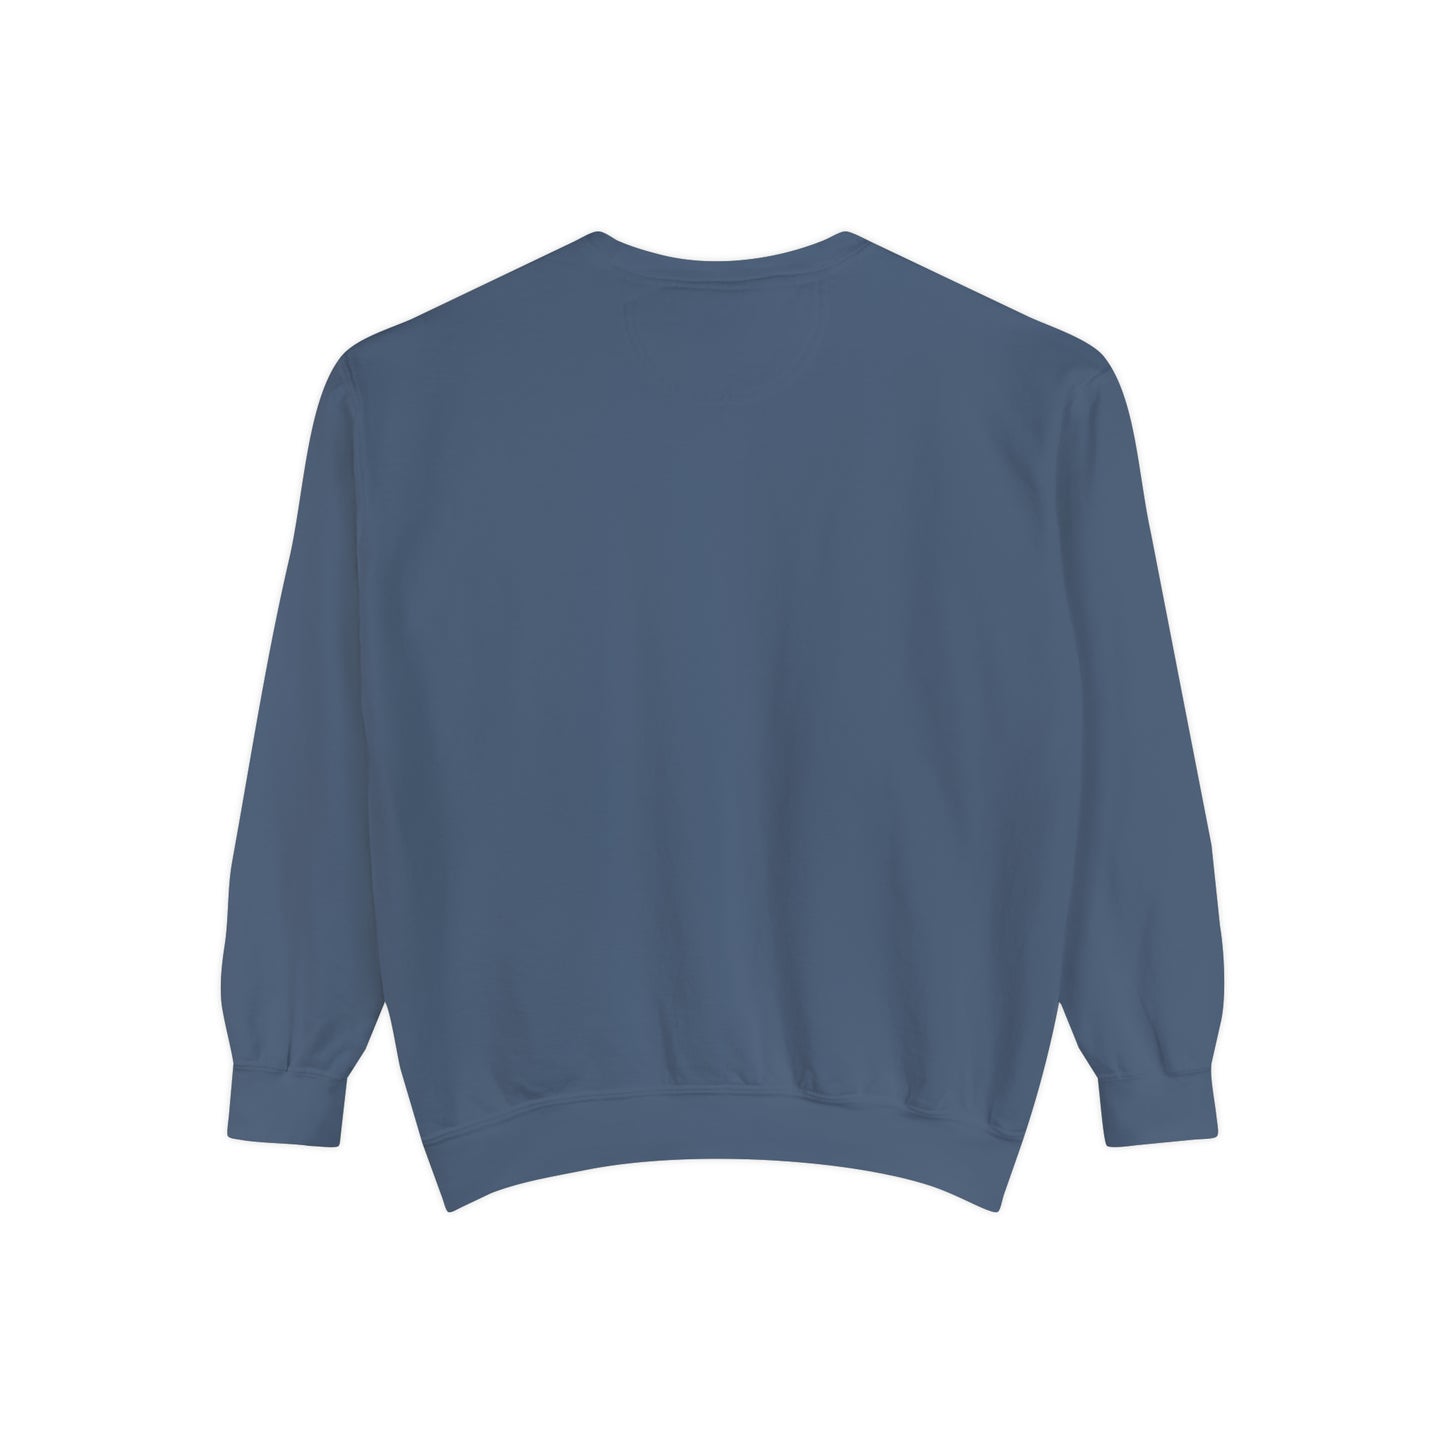 Unisex Garment-Dyed Sweatshirt Wine Christmas